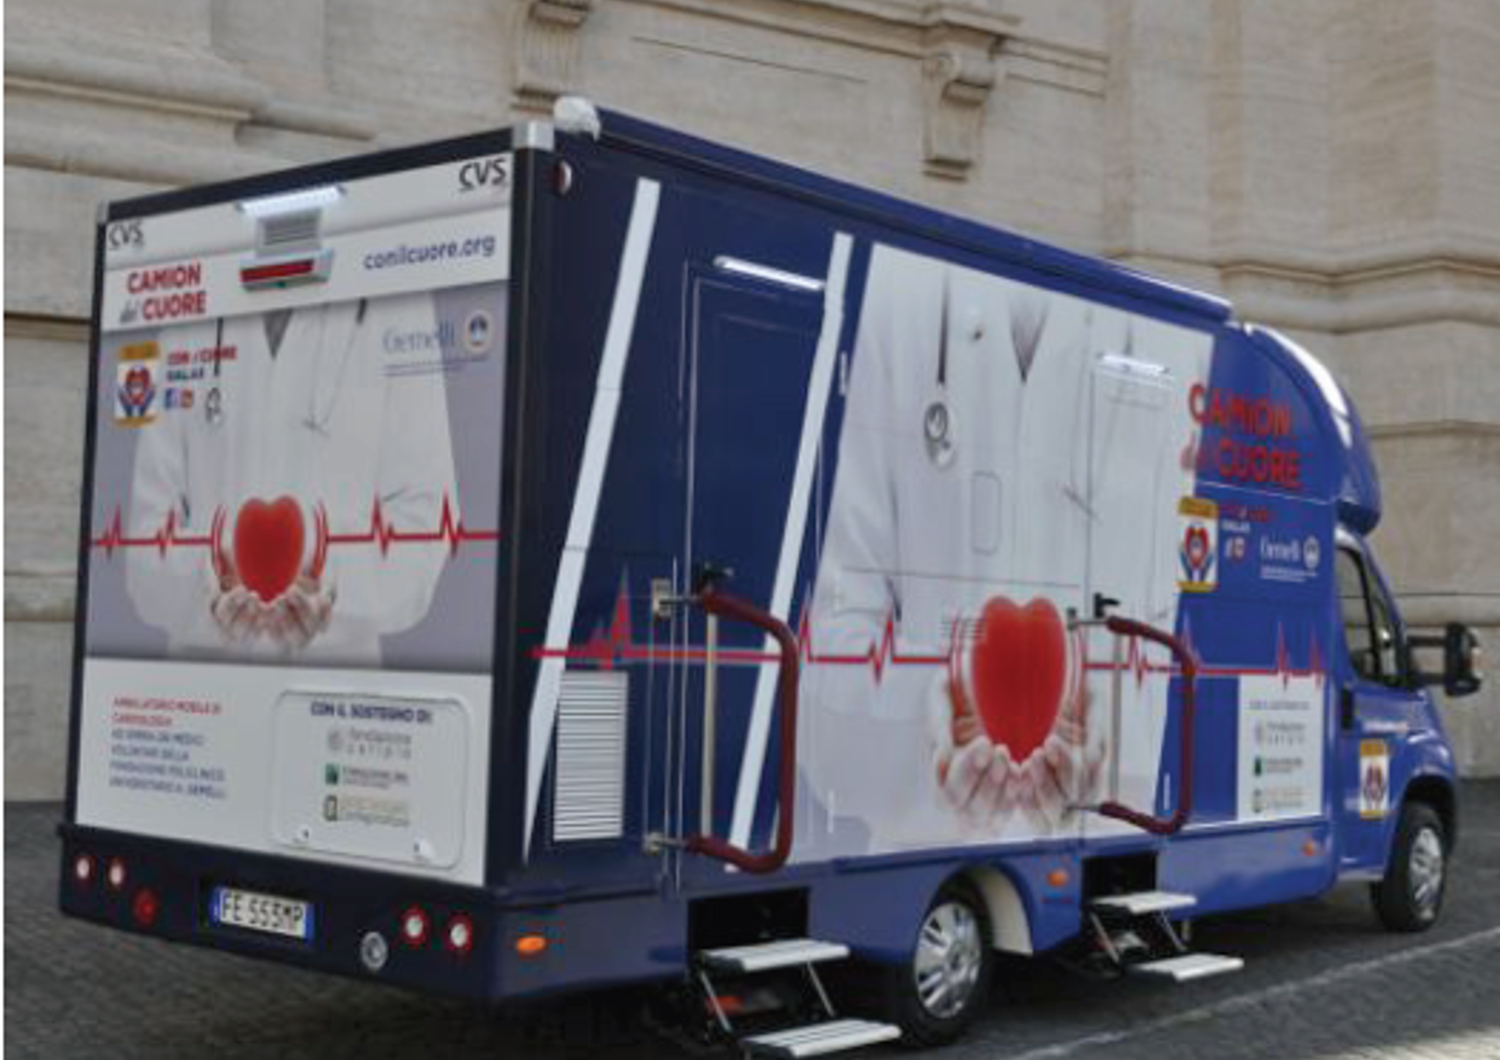 &quot;Camion del Cuore&quot; un ambulatorio mobile di cardiologia realizzato da Dona la vita con il cuore (sito)